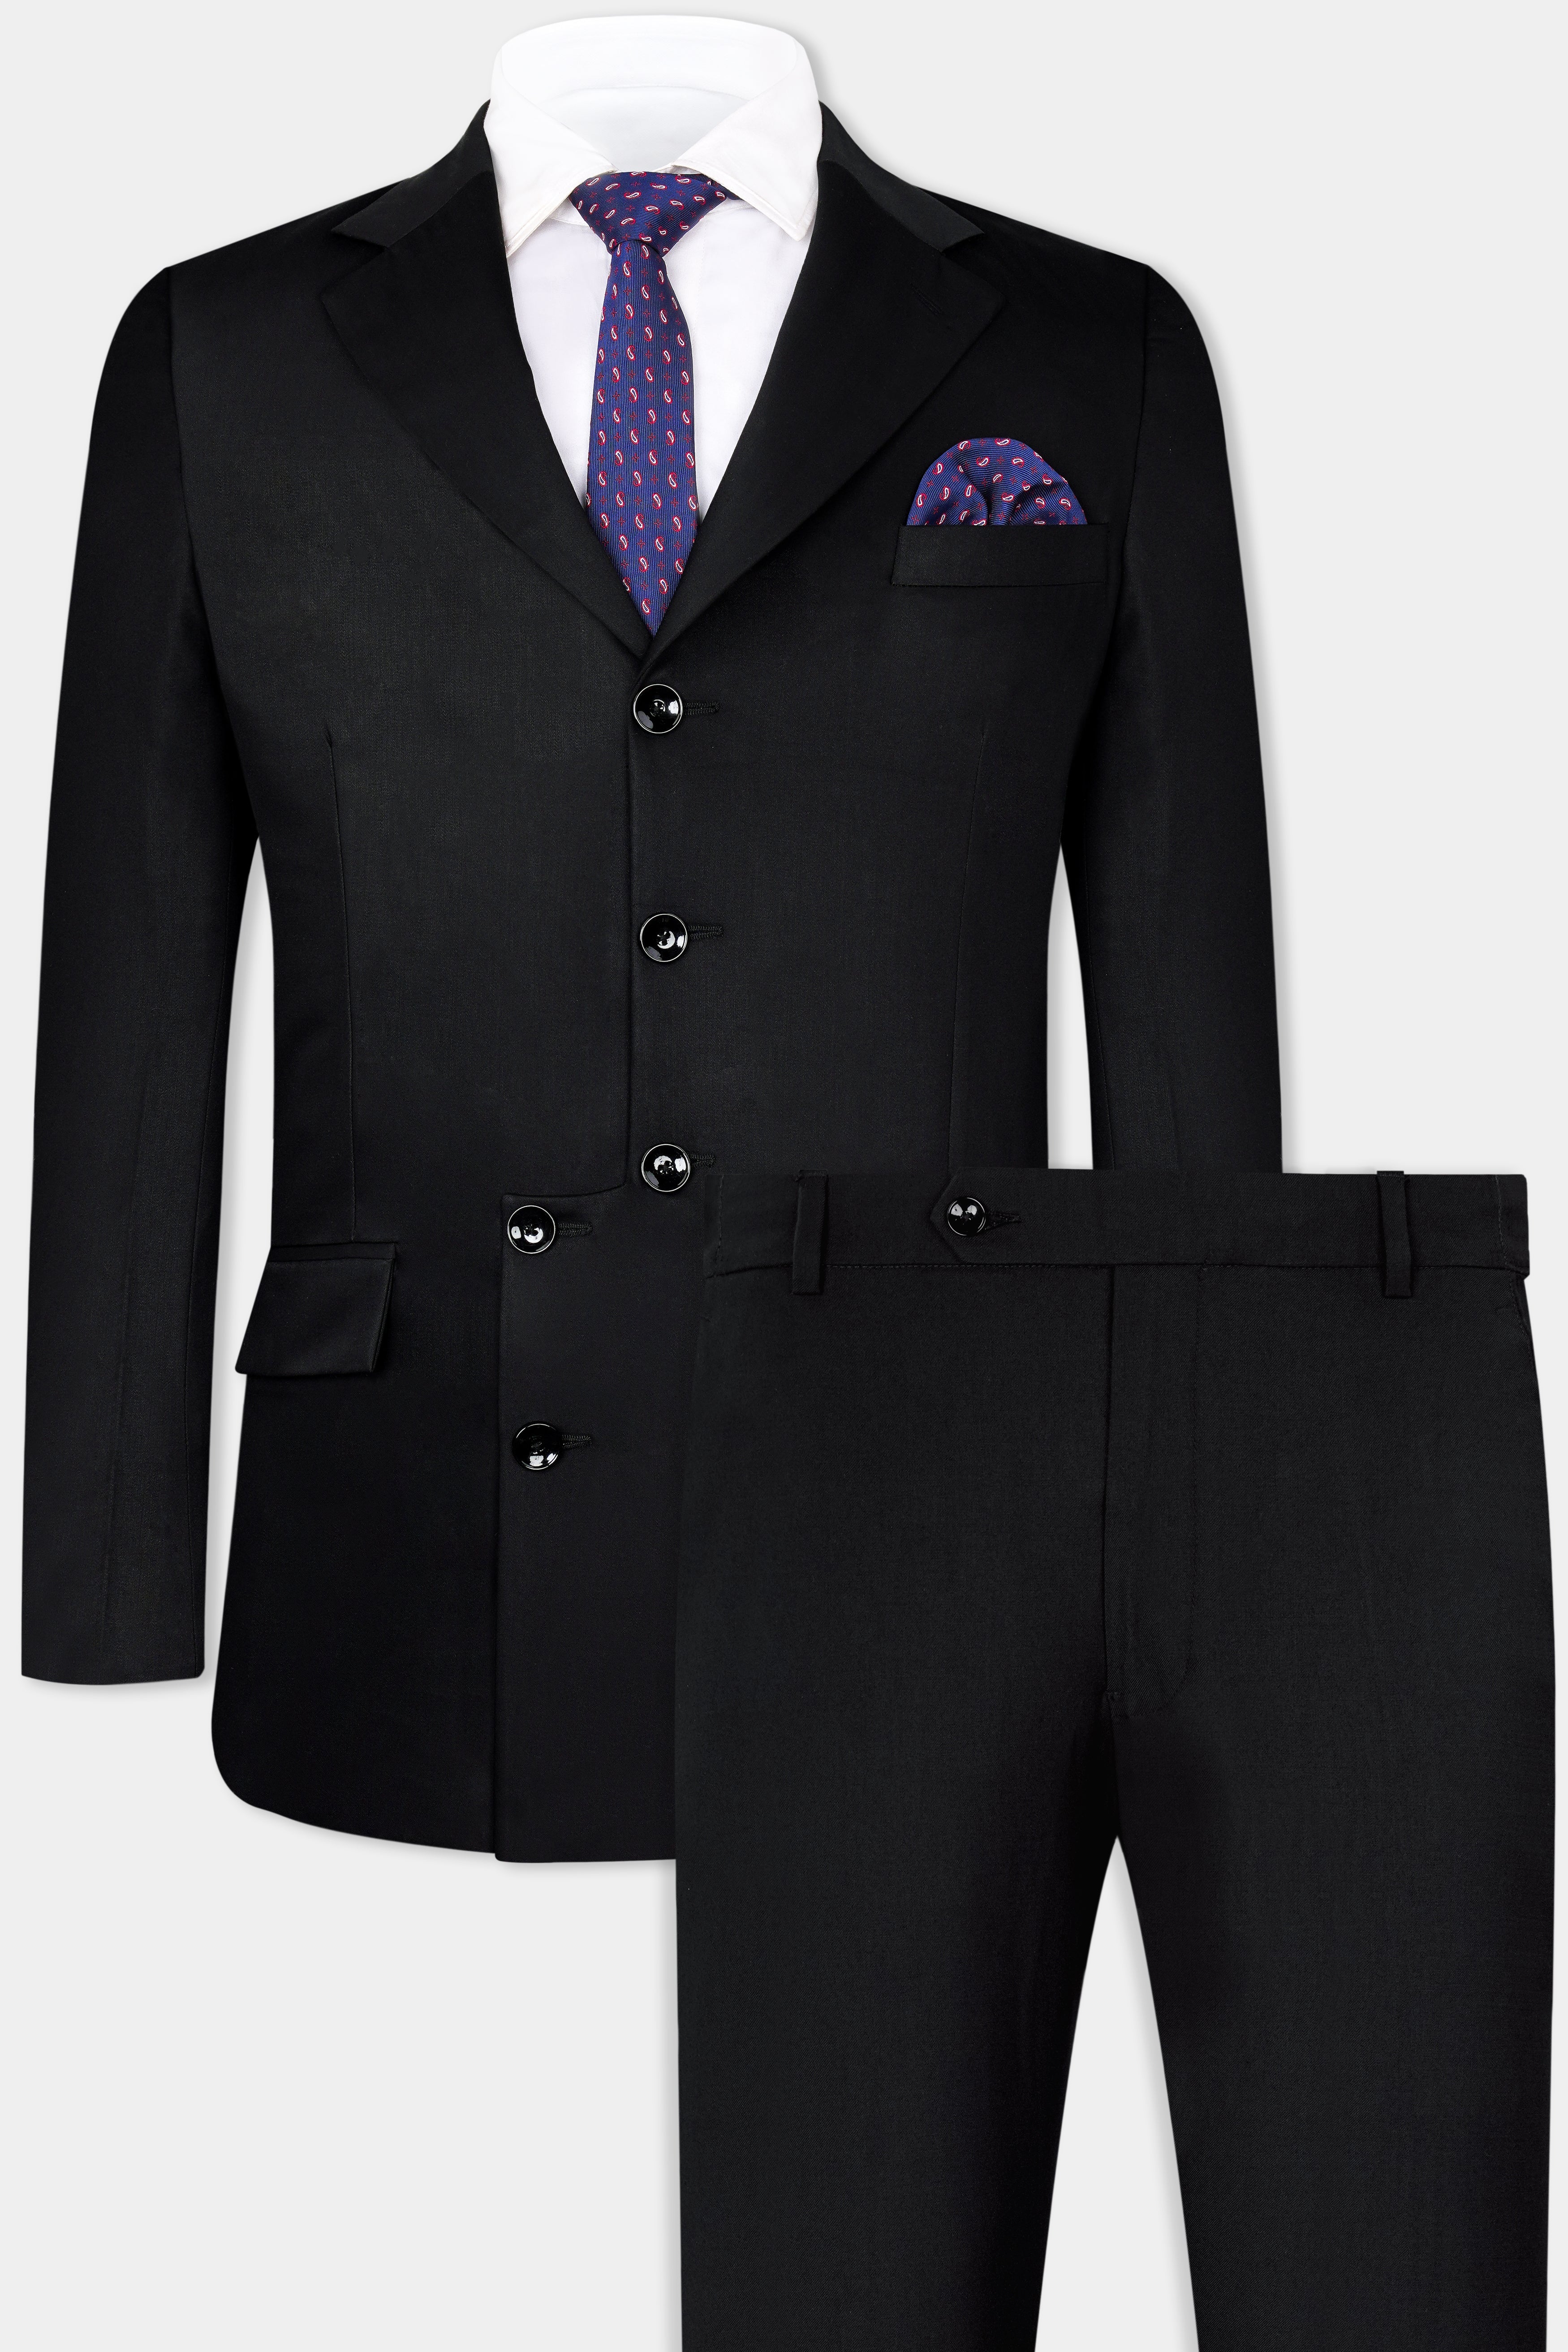 Jade Black Wool Rich Designer Suit ST3003-D188-36, ST3003-D188-38, ST3003-D188-40, ST3003-D188-42, ST3003-D188-44, ST3003-D188-46, ST3003-D188-48, ST3003-D188-50, ST3003-D188-52, ST3003-D188-54, ST3003-D188-56, ST3003-D188-58, ST3003-D188-60